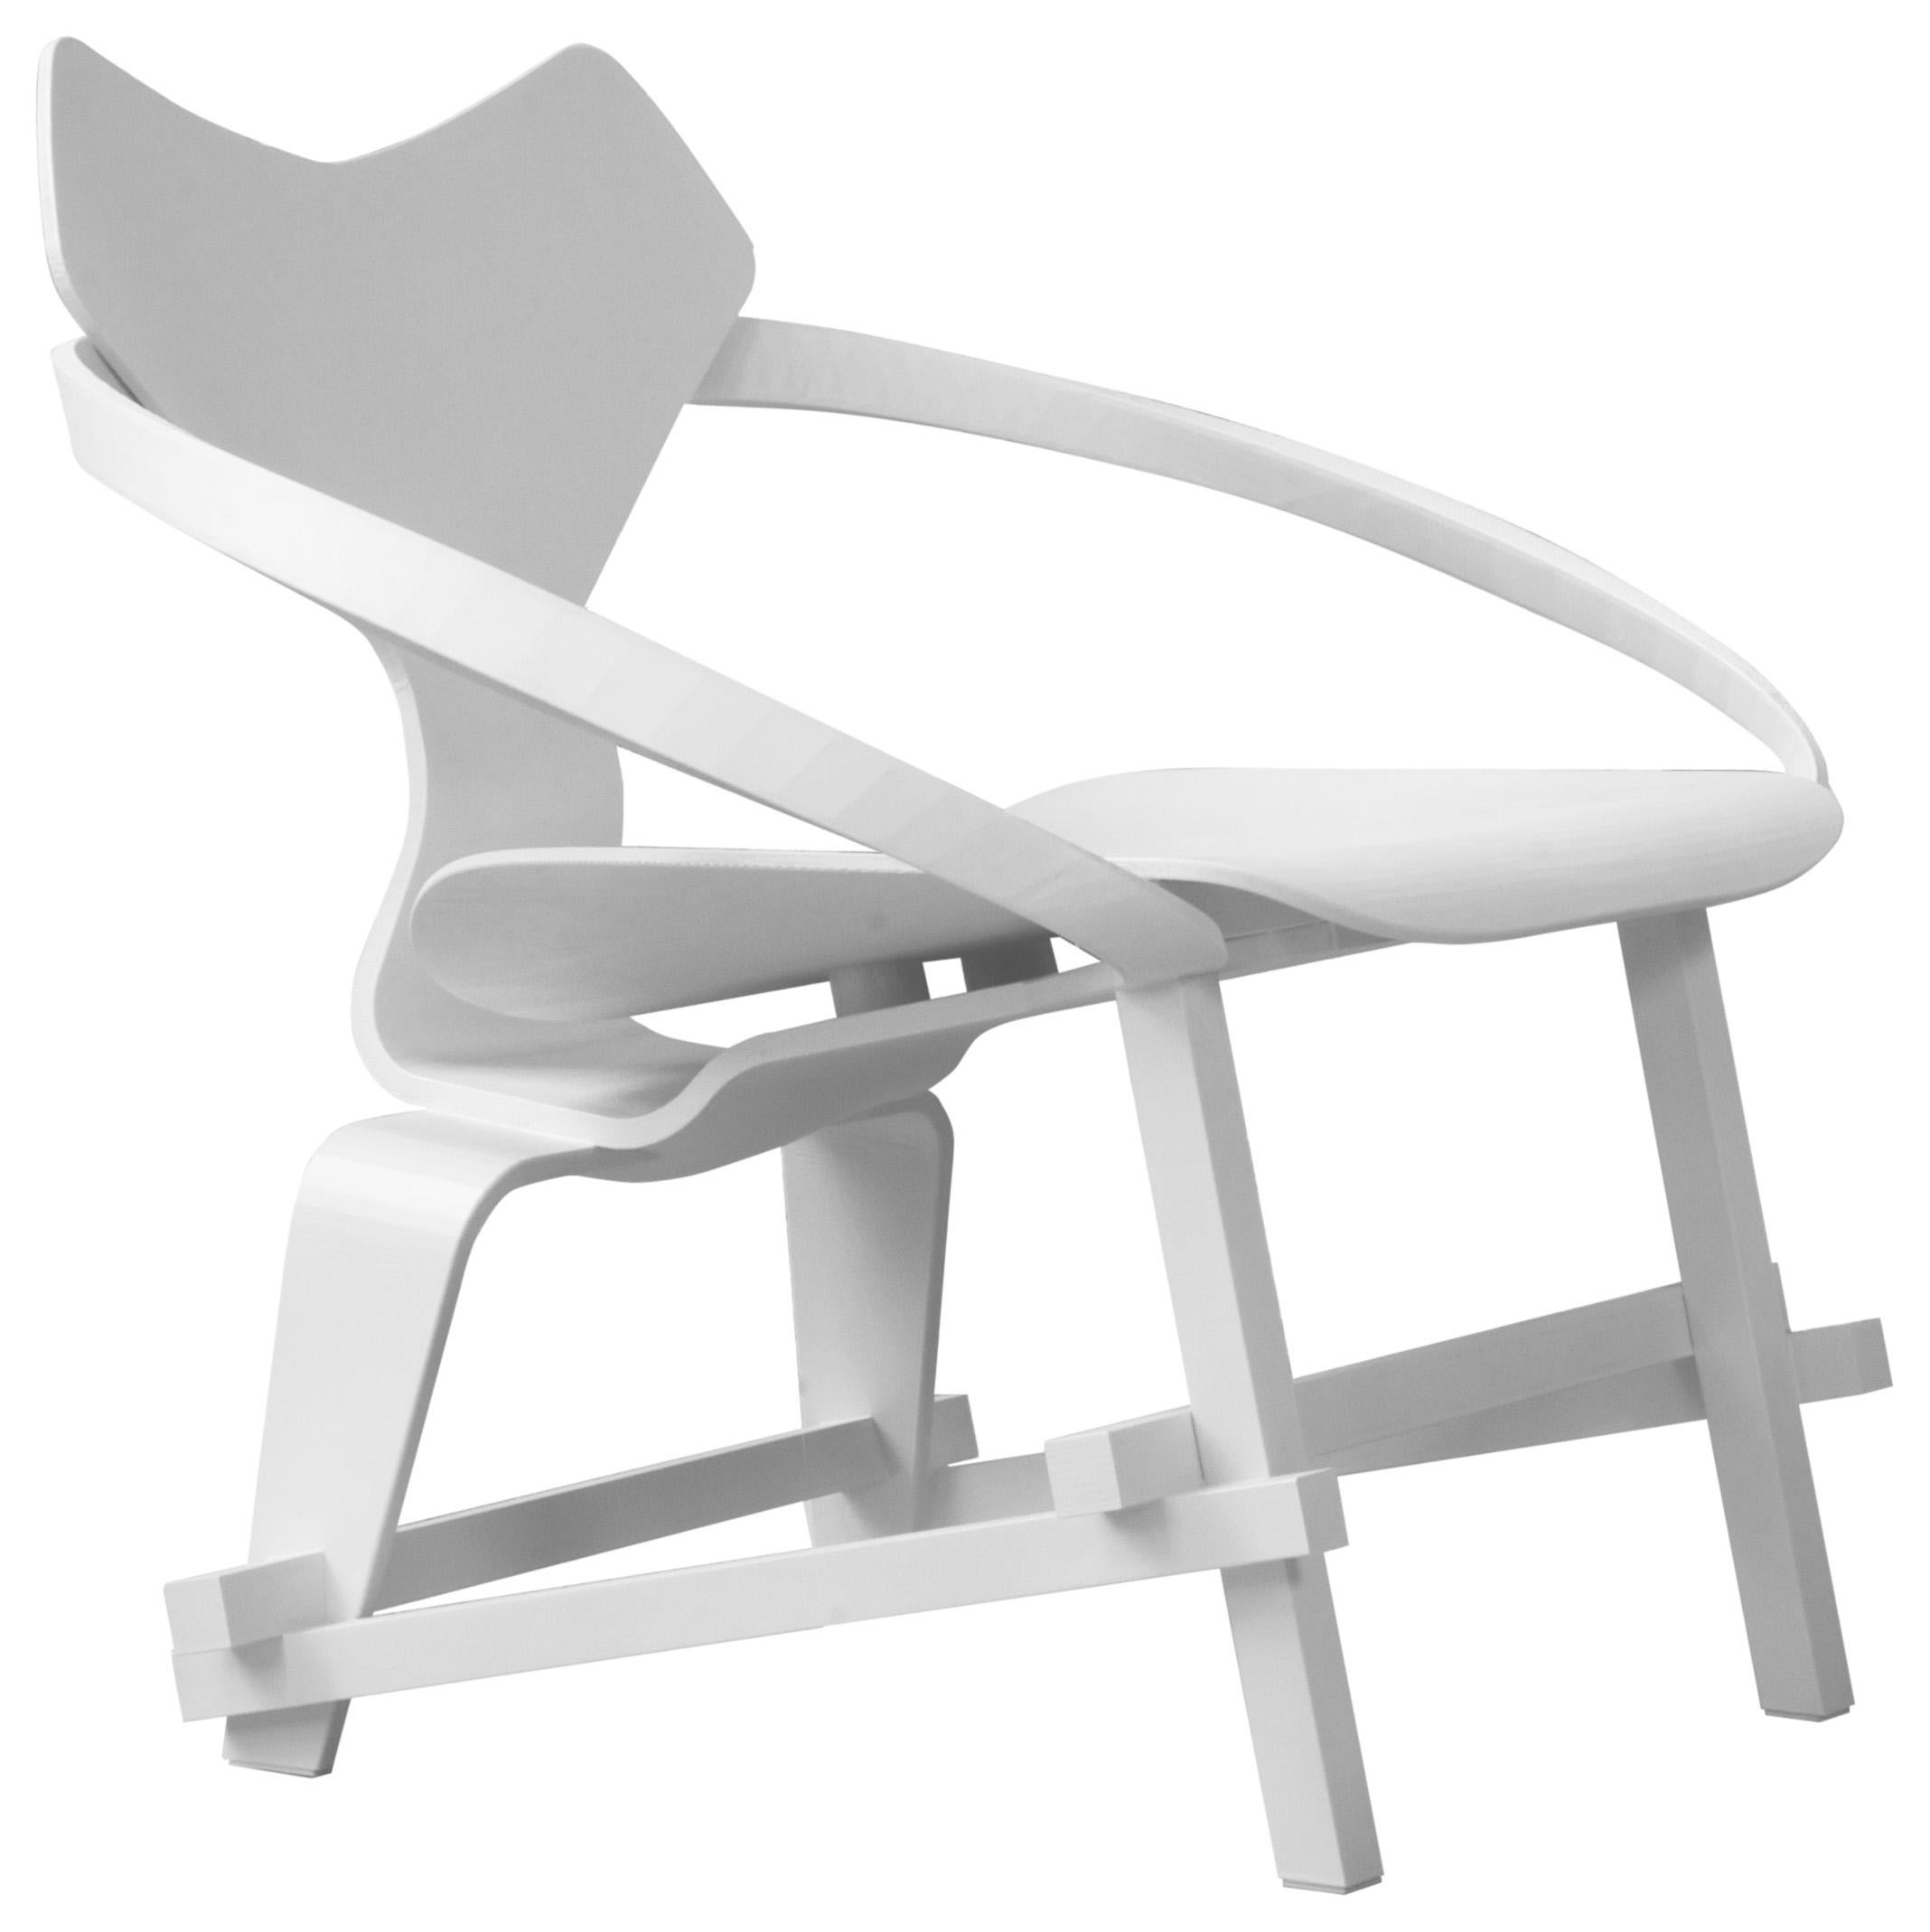 Diederik Steels Copies Composes And Prints Une chaise imprimée en 3D qui soulève des questions sur les droits d'auteur. En découpant en ligne des dessins 3D existants d'icônes établies, Diederik compose une nouvelle chaise. Il utilise des techniques